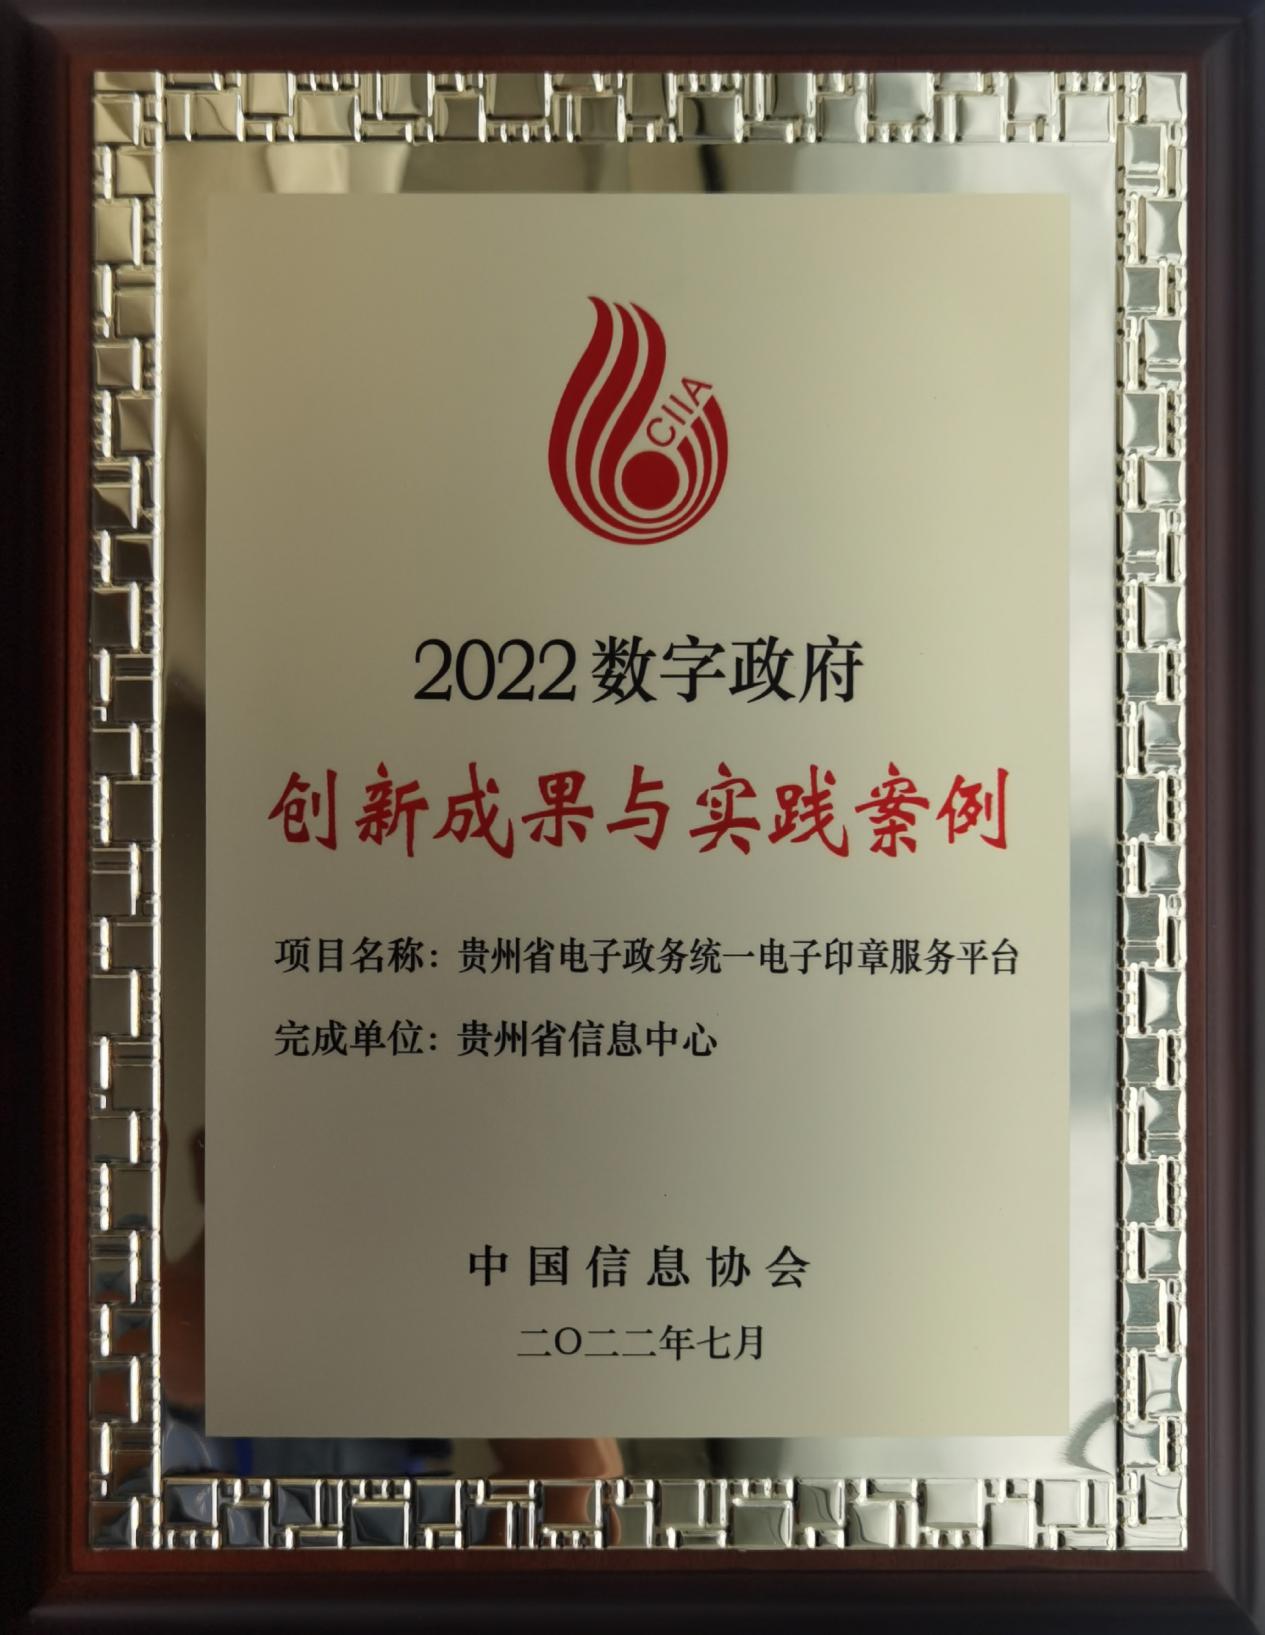 贵州省电子政务统一电子印章服务平台荣获“2022数字政府创新成果与实践案例”